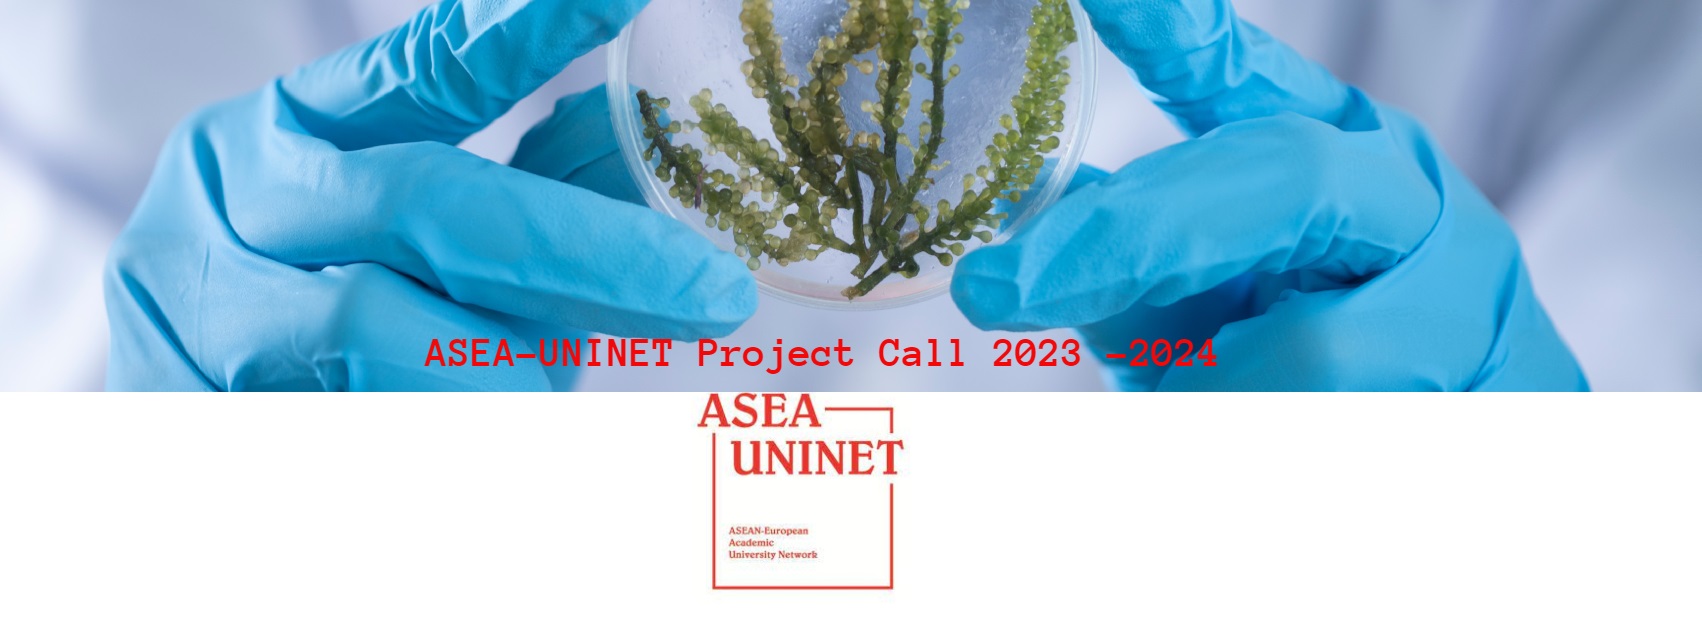 ประชาสัมพันธ์ ASEA-UNINET Project Call 2023-2024